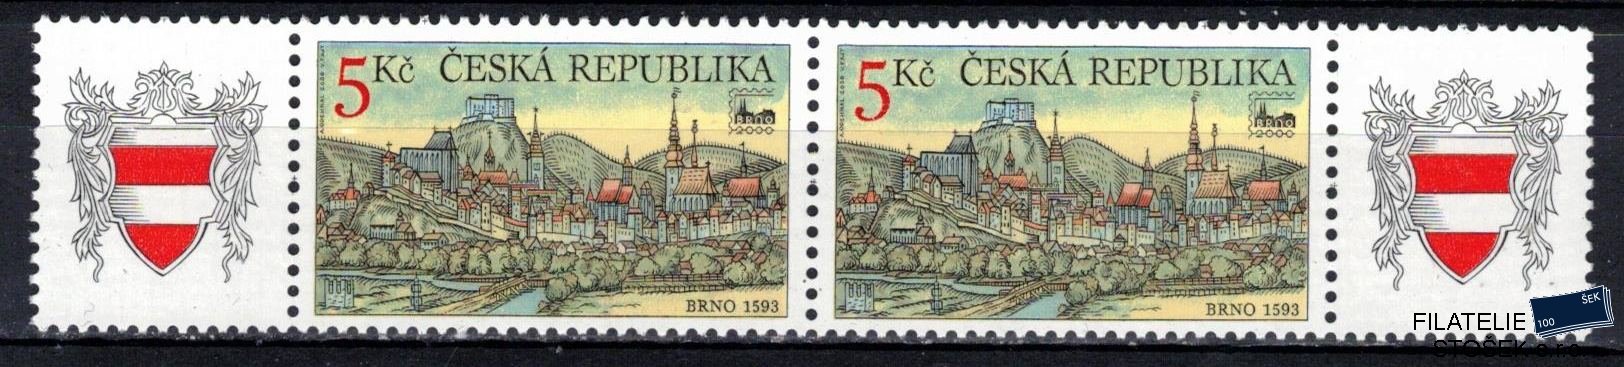 Česká republika známky 244 KZZK